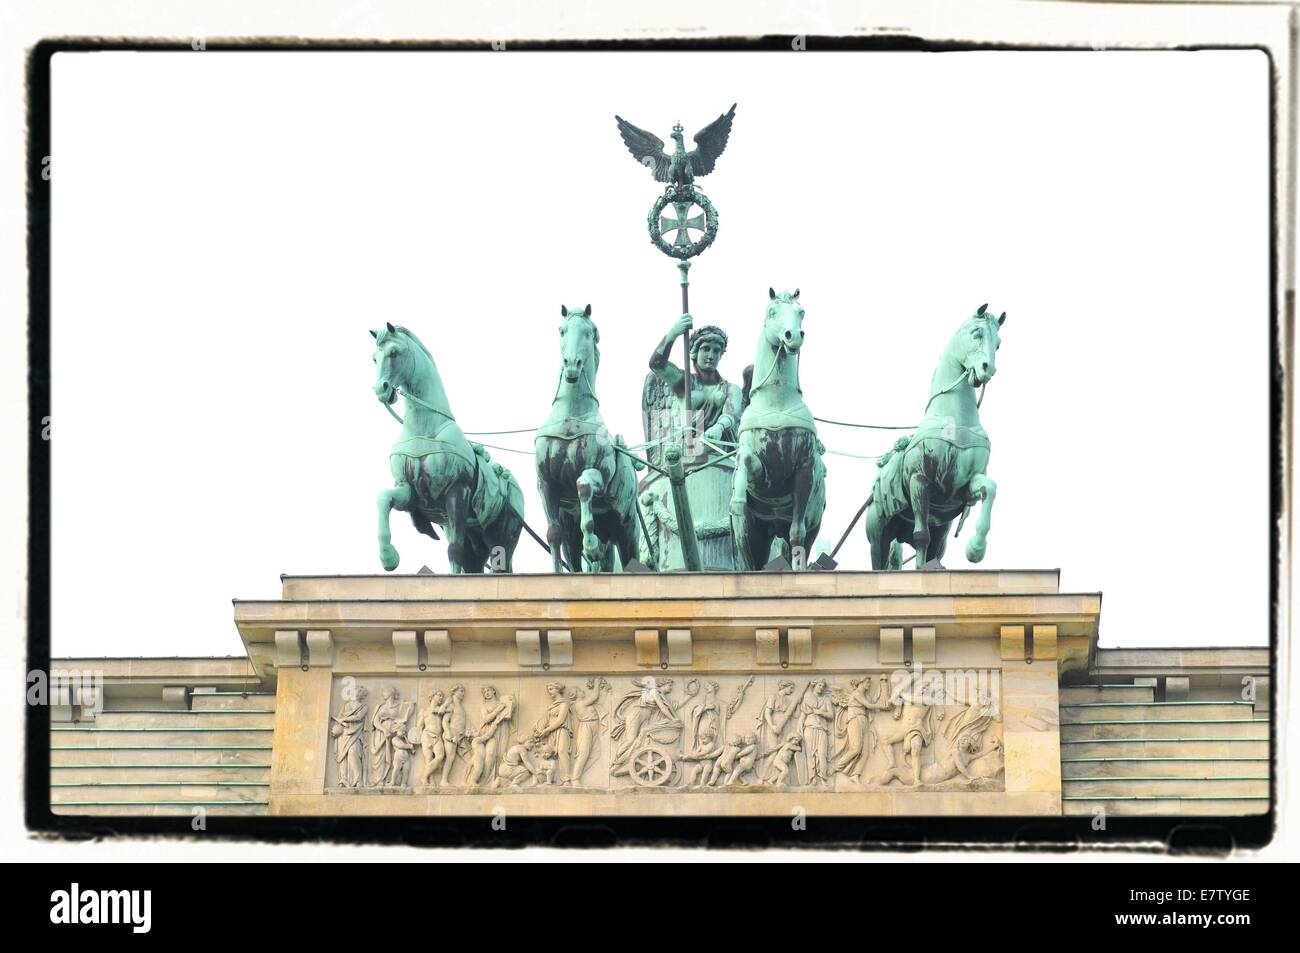 Détail architectural de la porte de Brandebourg à Berlin, Allemagne Banque D'Images